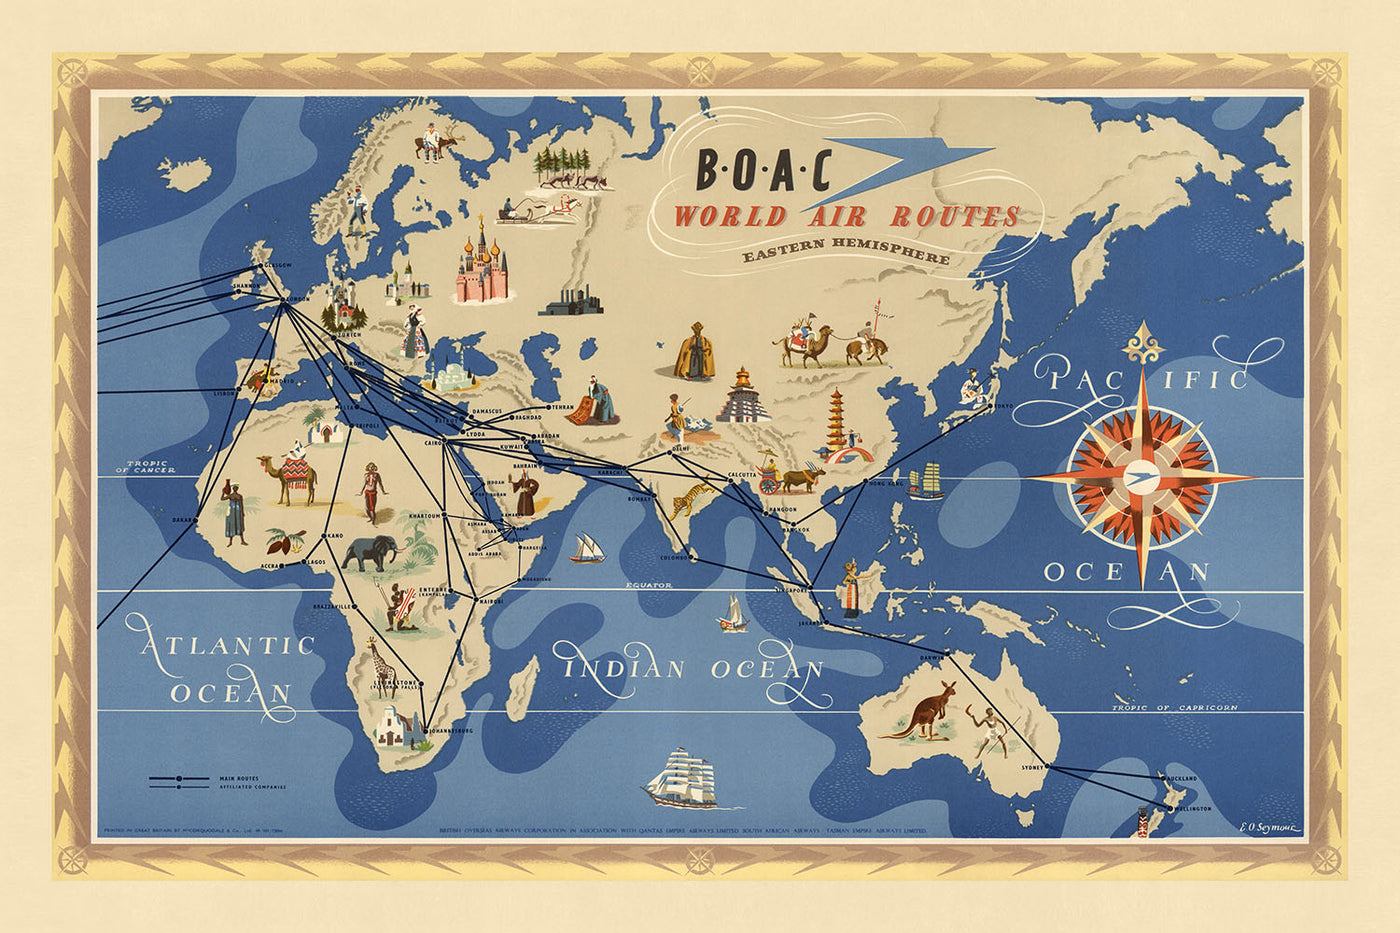 Alte Weltkarte der Flugrouten der östlichen Hemisphäre von BOAC, 1949: Bildliche Illustrationen, thematischer Stil, Darstellung der Luftfahrt der Mitte des 20. Jahrhunderts